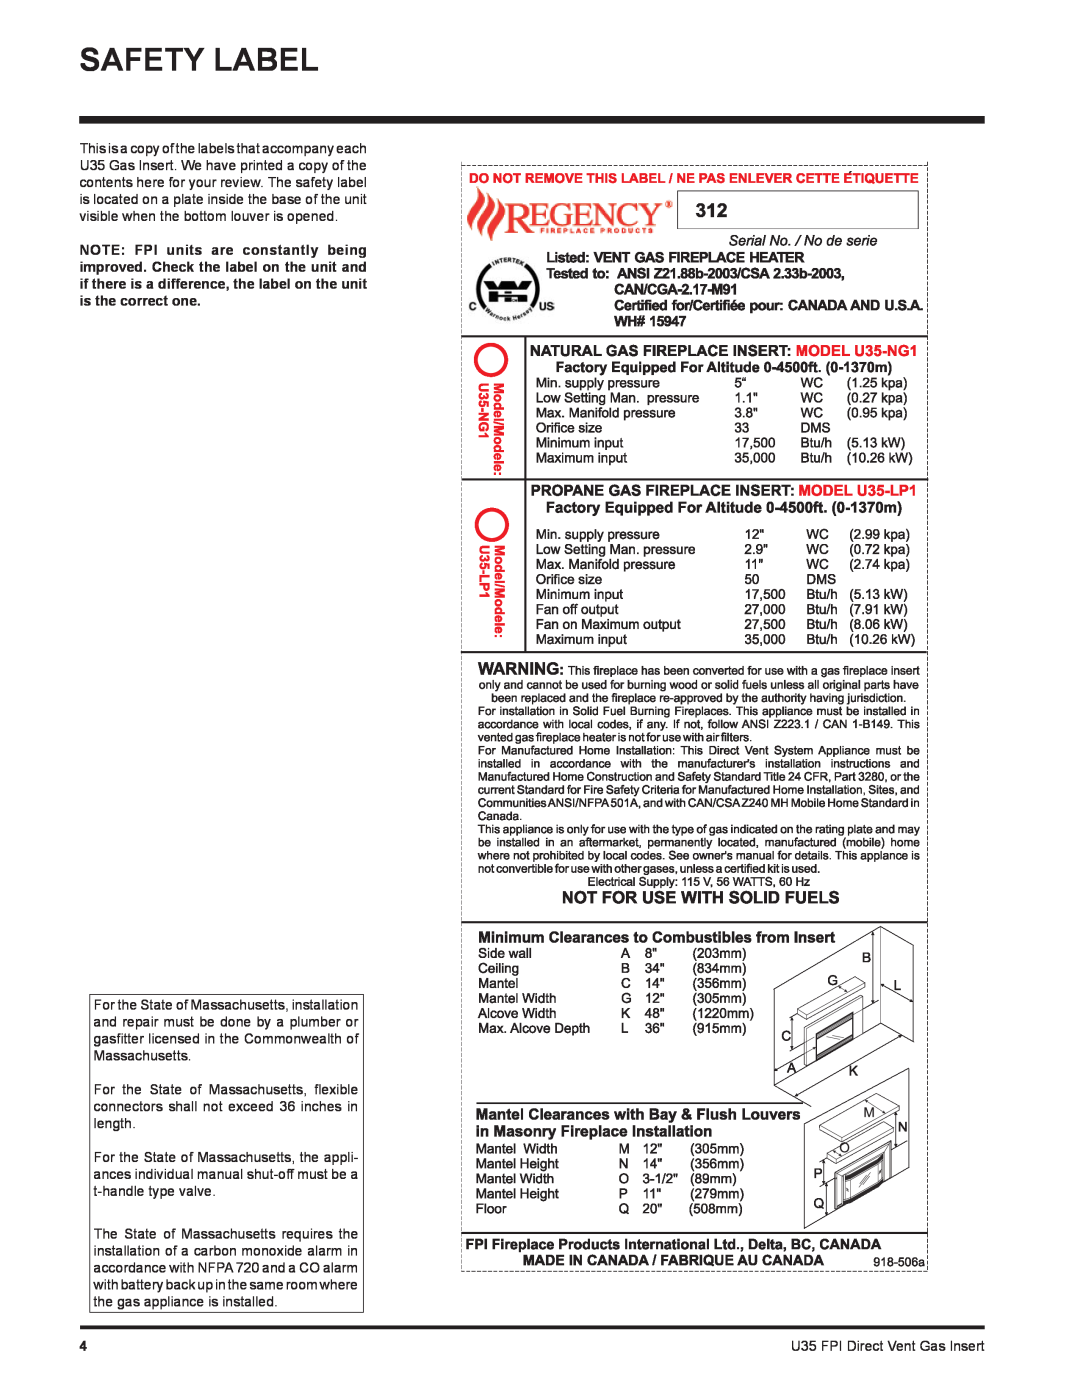 Regency U35-NG1, U35-LP1 installation manual Safety Label, U35 FPI Direct Vent Gas Insert 